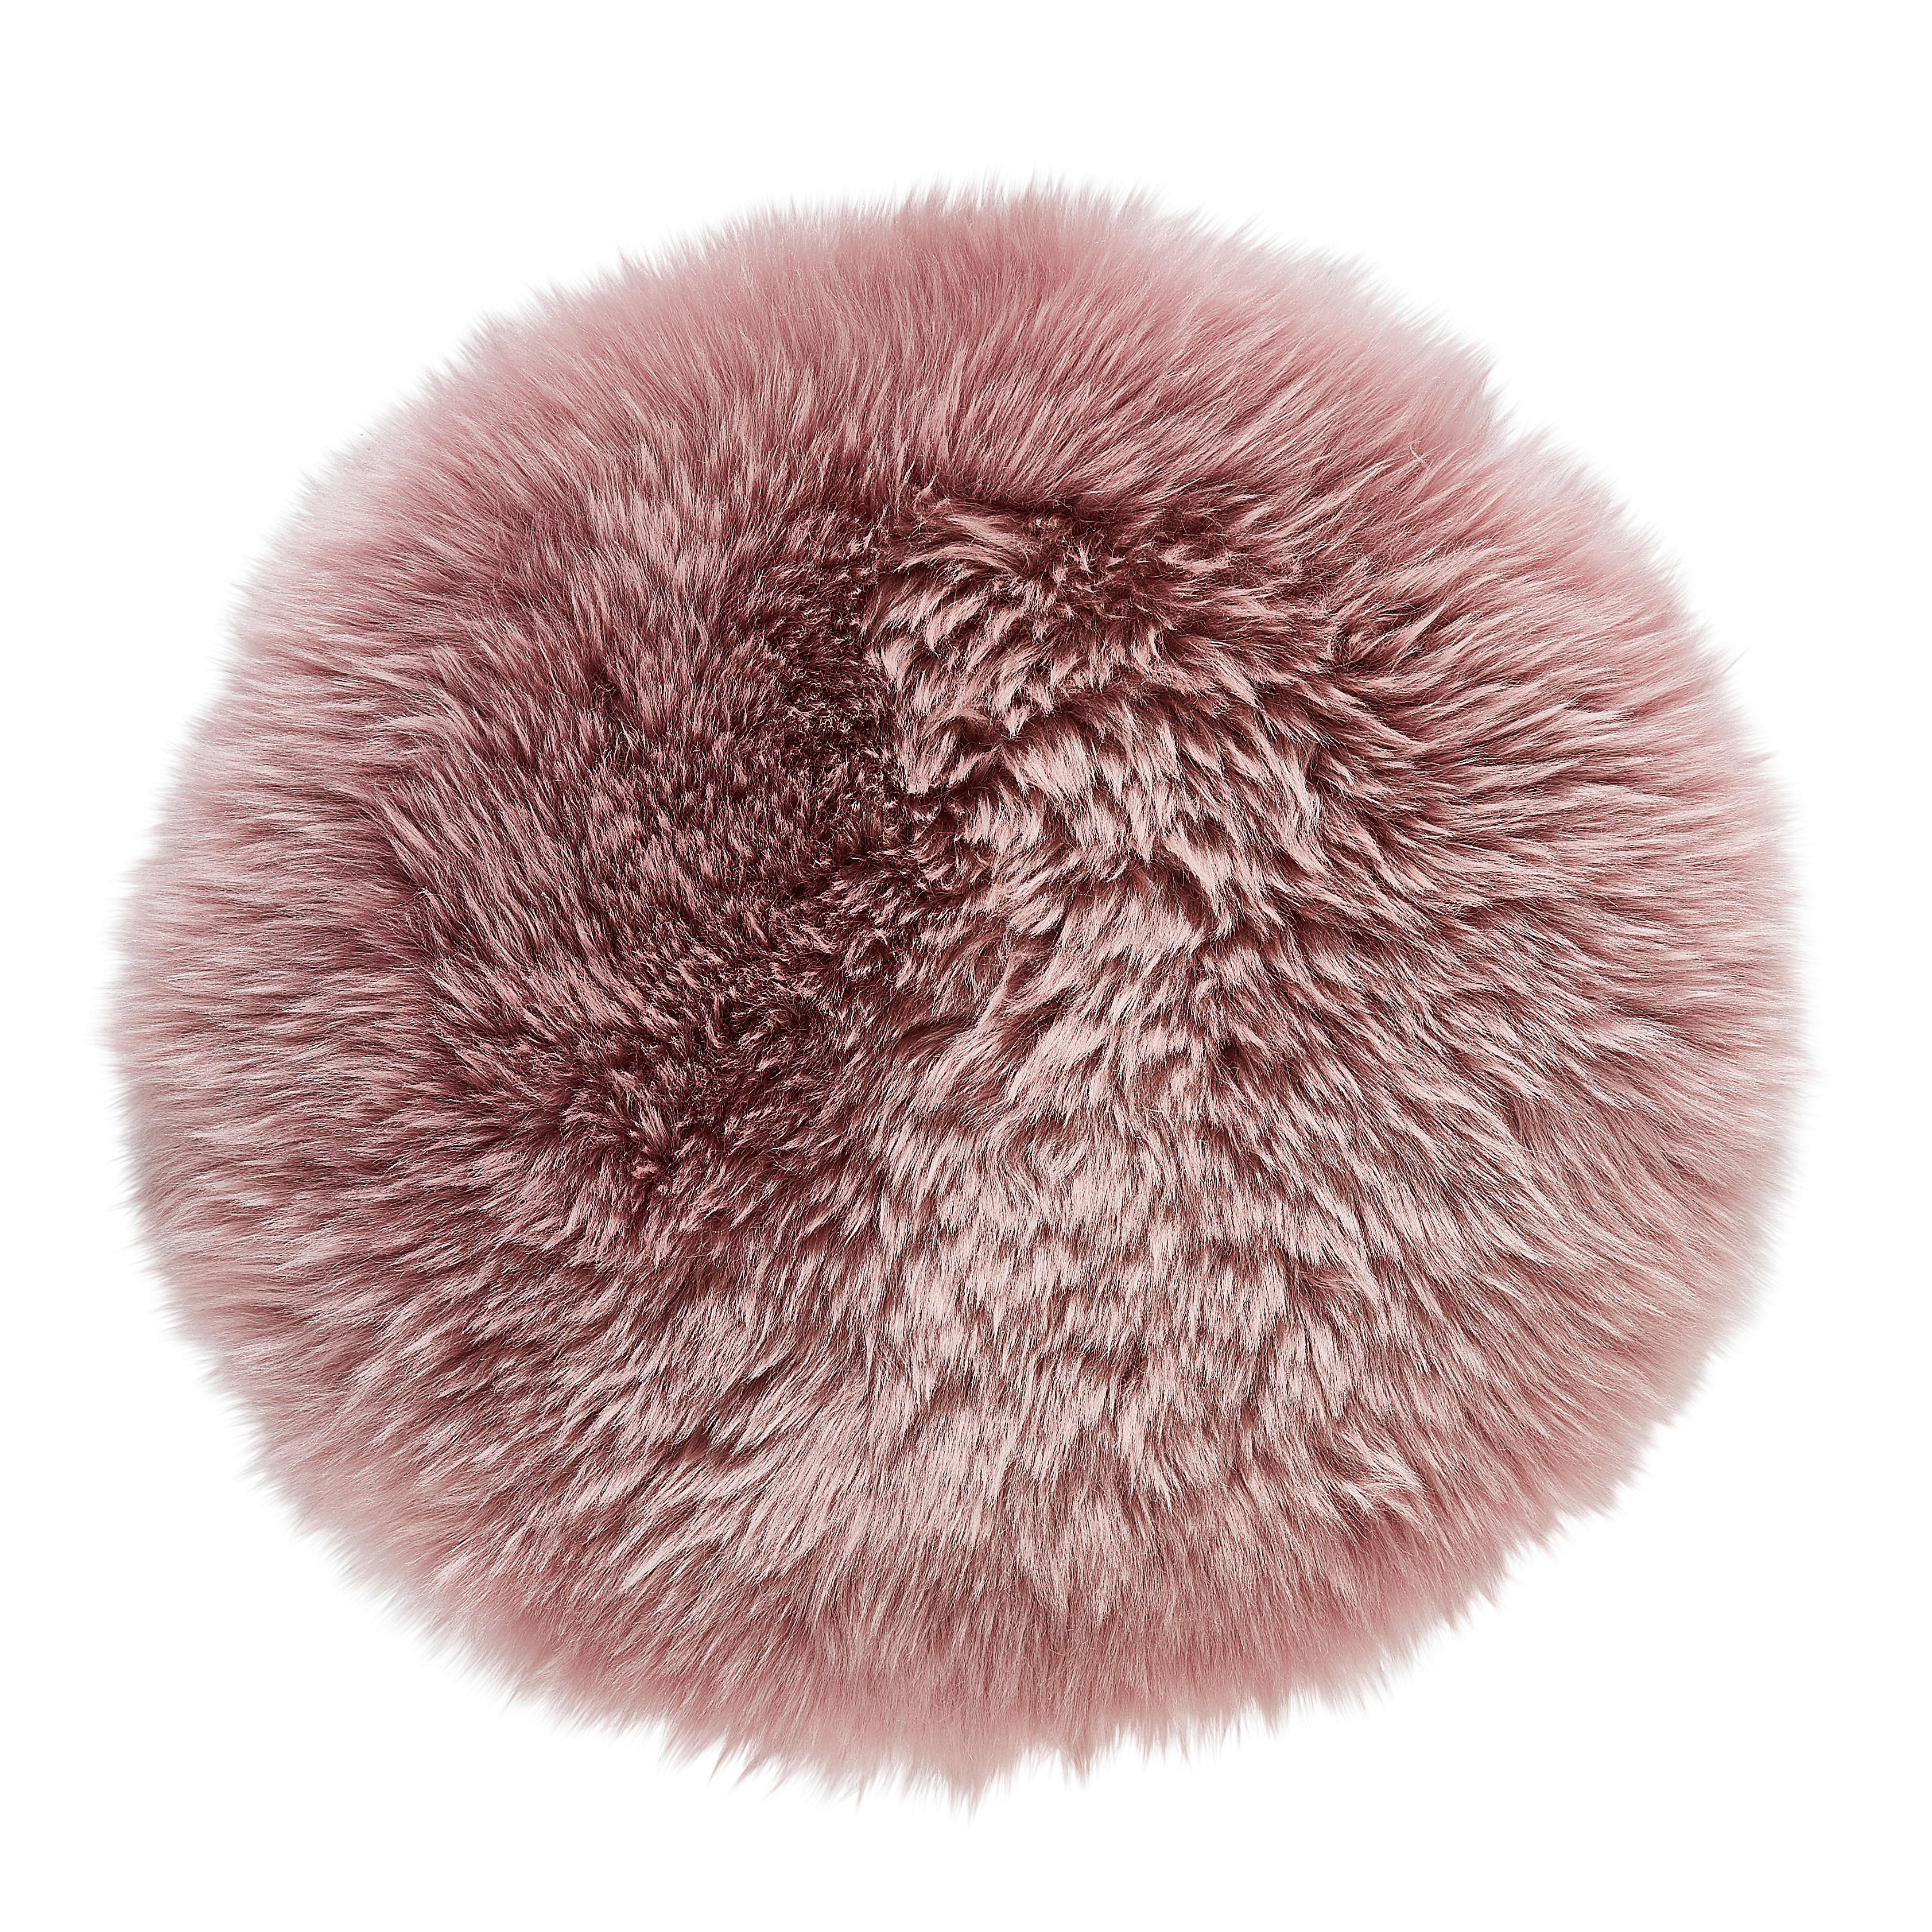 SITZKISSEN Otago 34 cm  - Pink, KONVENTIONELL, Textil/Fell (34cm) - Esposa